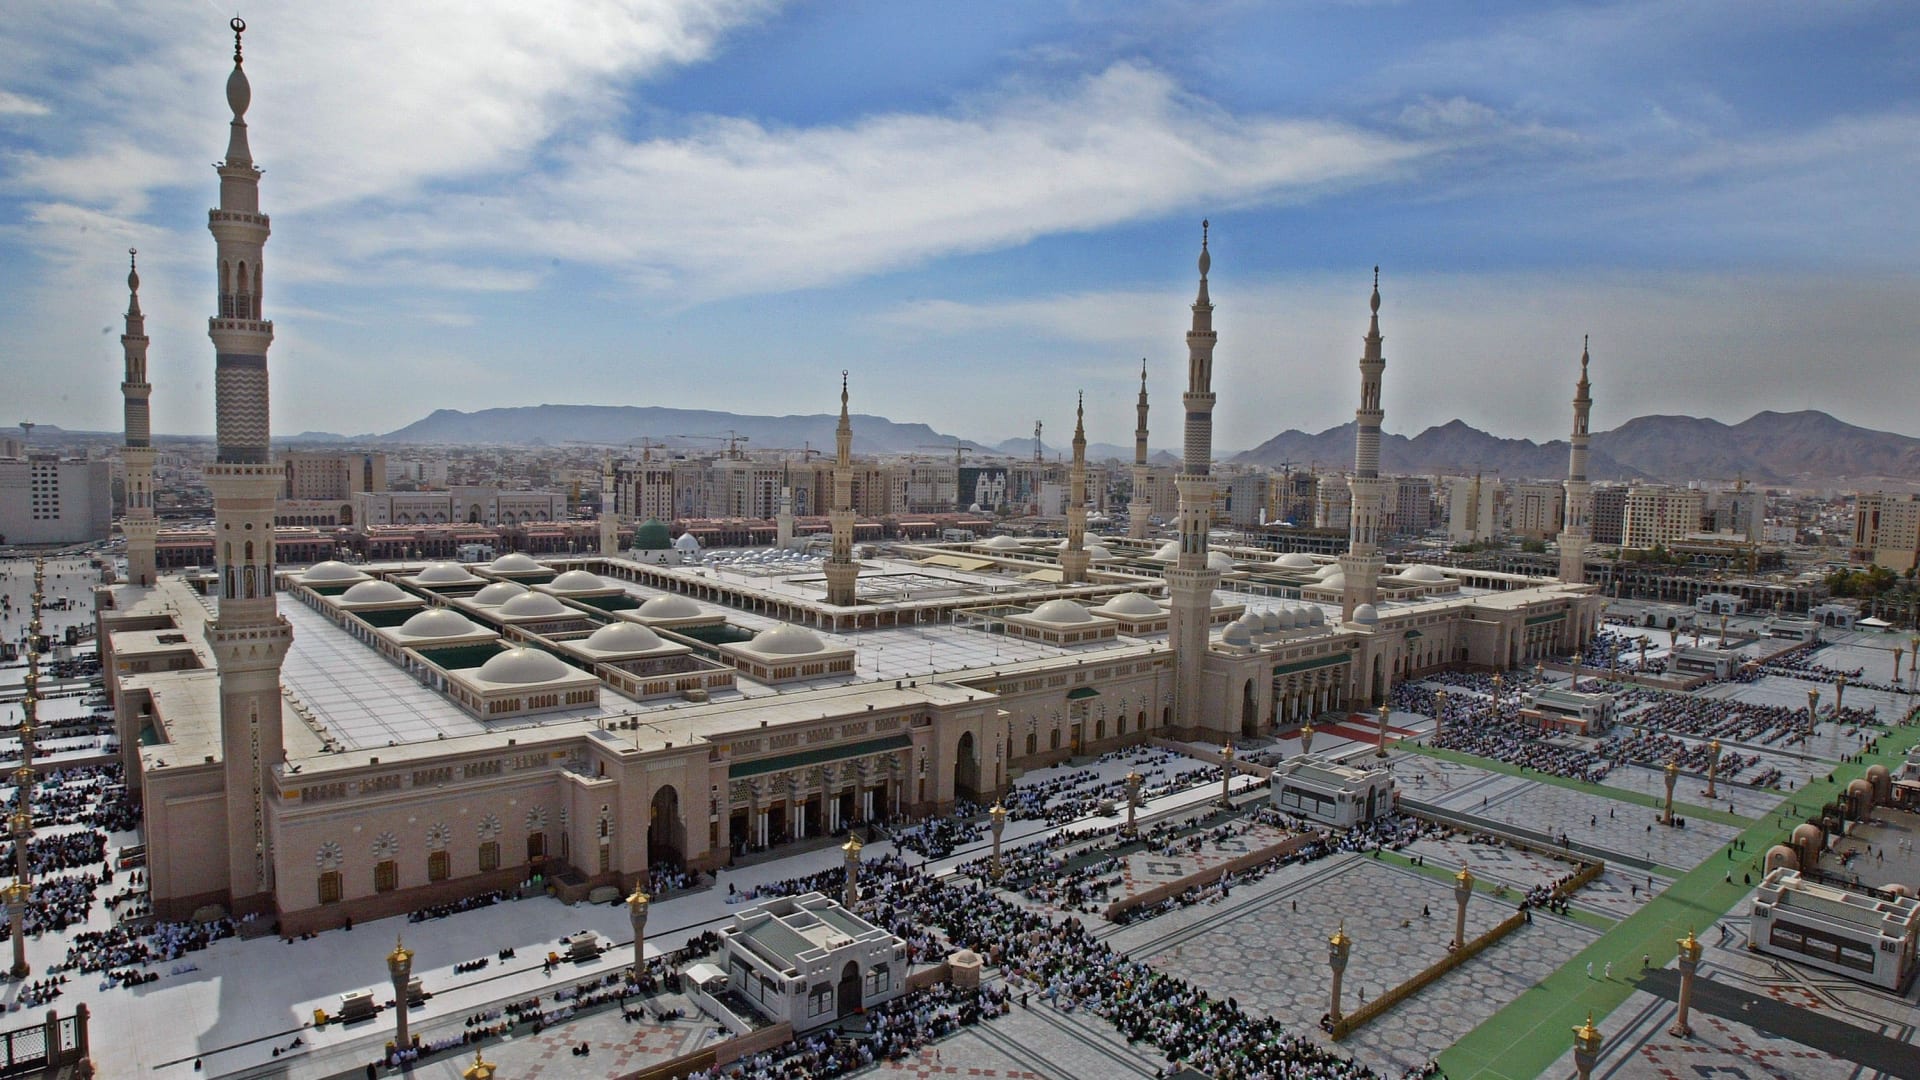 المسجد النبوي في المدينة المنورة بالسعودية 